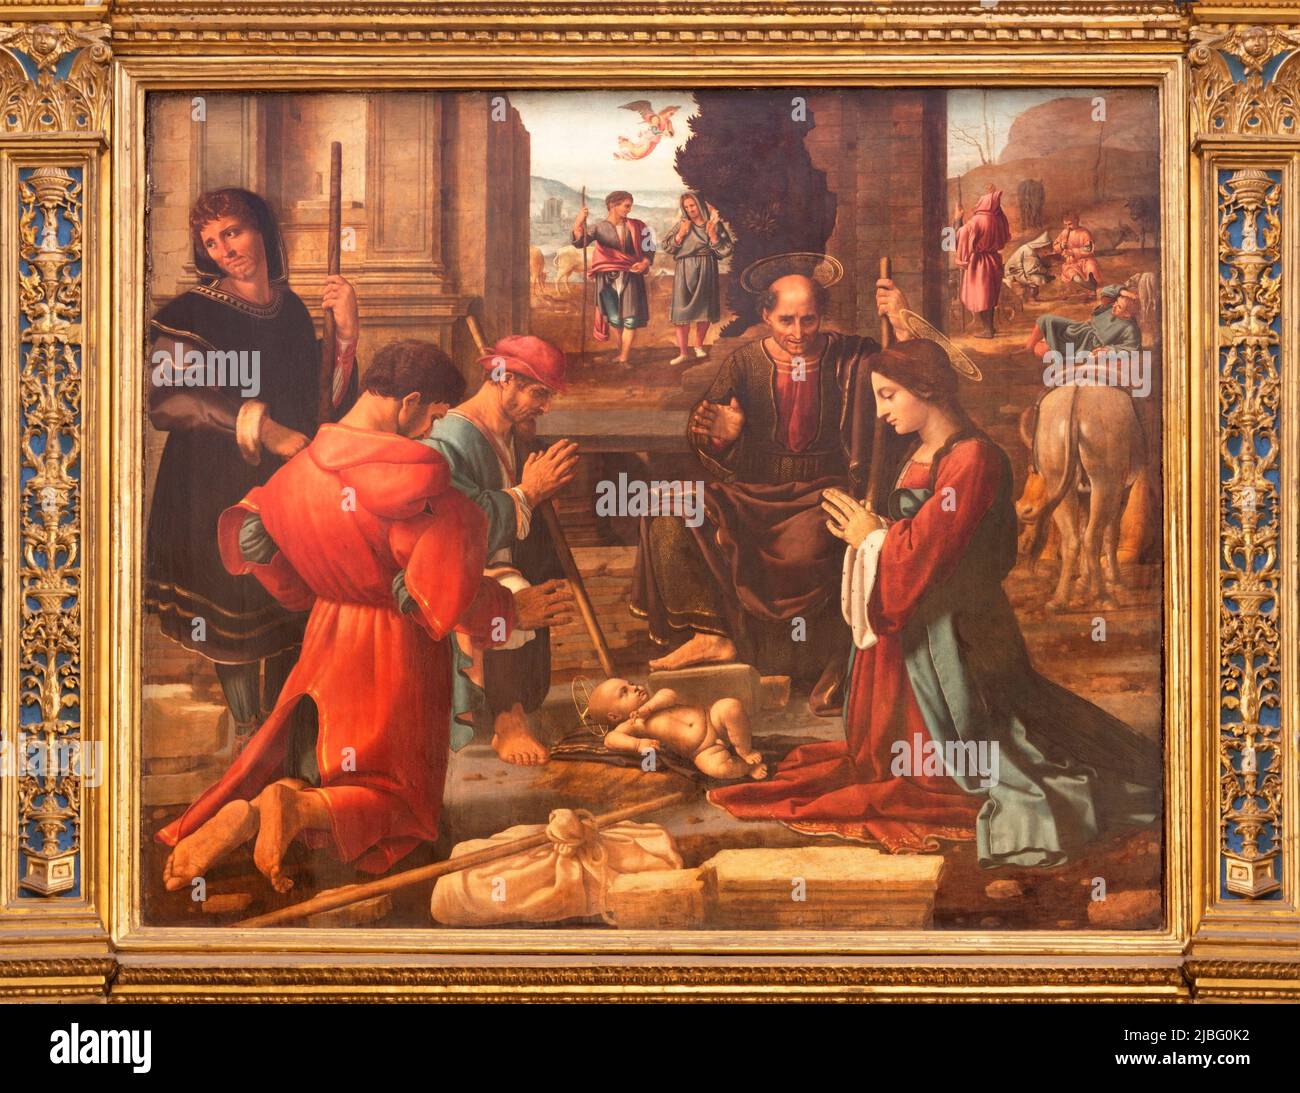 VALENCIA, SPANIEN - 14. FEBRUAR 2022: Das Gemälde der Anbetung von Schafherden auf dem Hauptaltar in der Kathedrale. Stockfoto